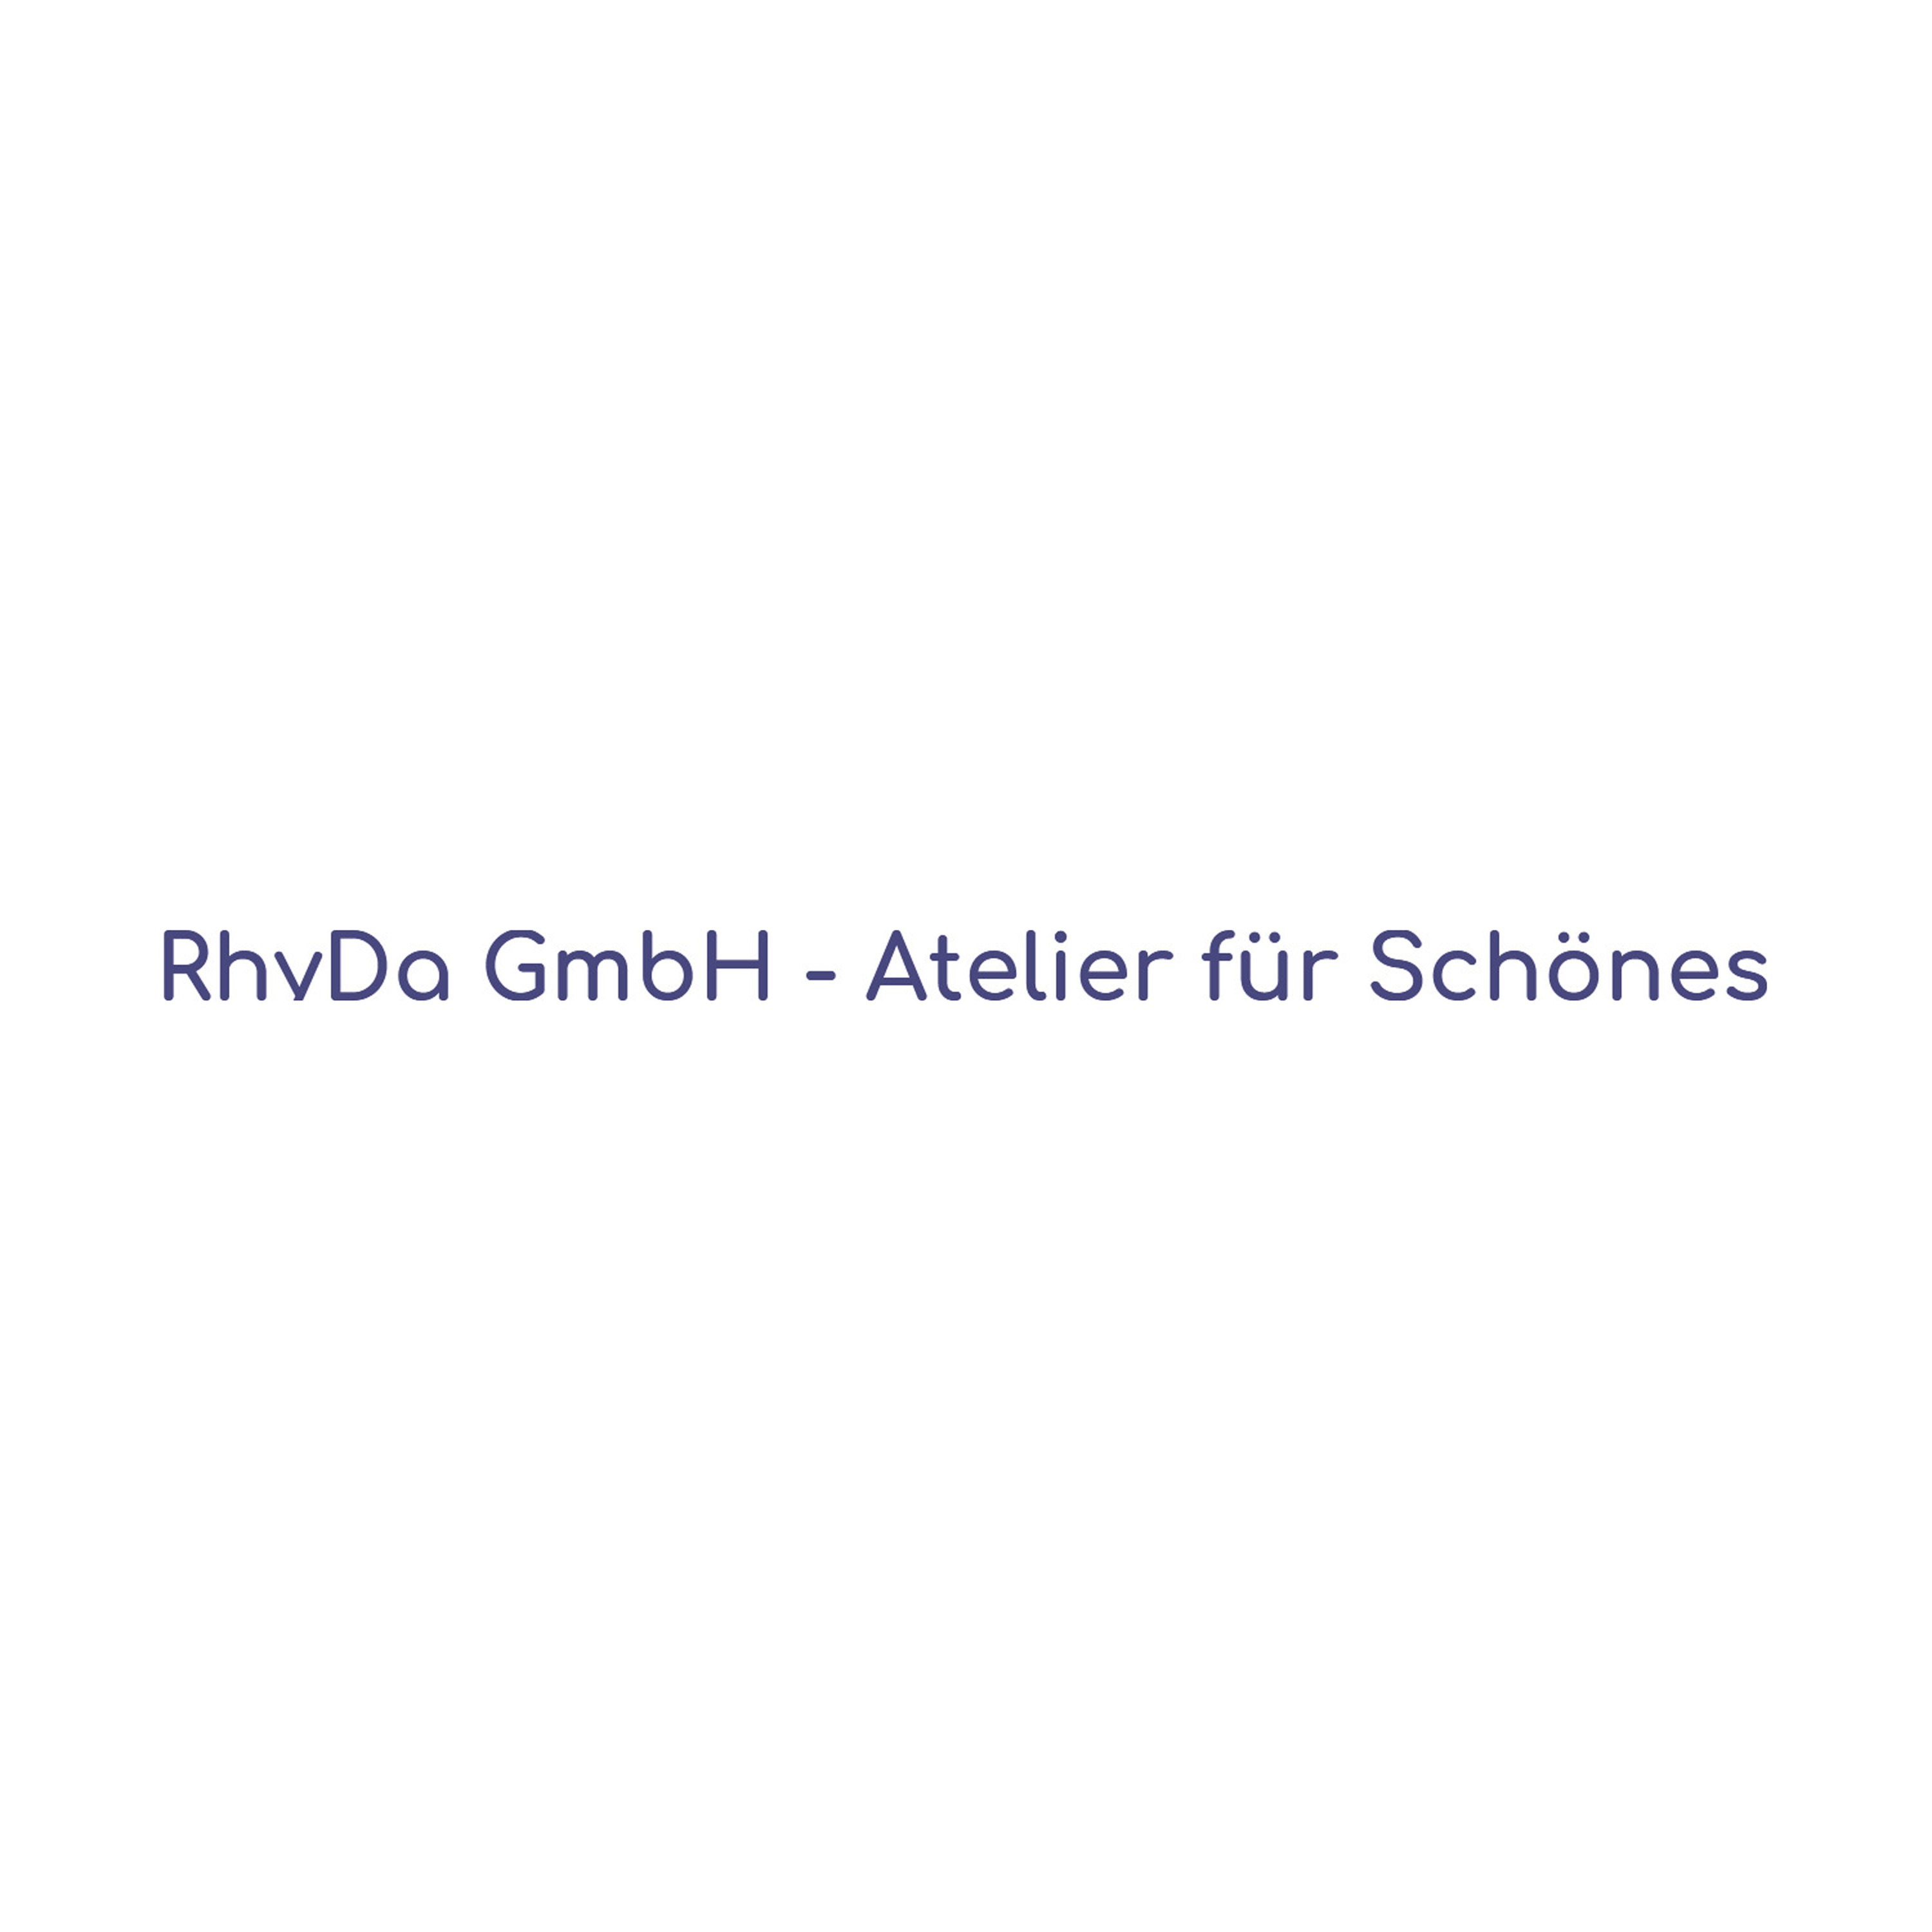 RhyDa GmbH - Atelier für Schönes - Wollgeschäft Logo